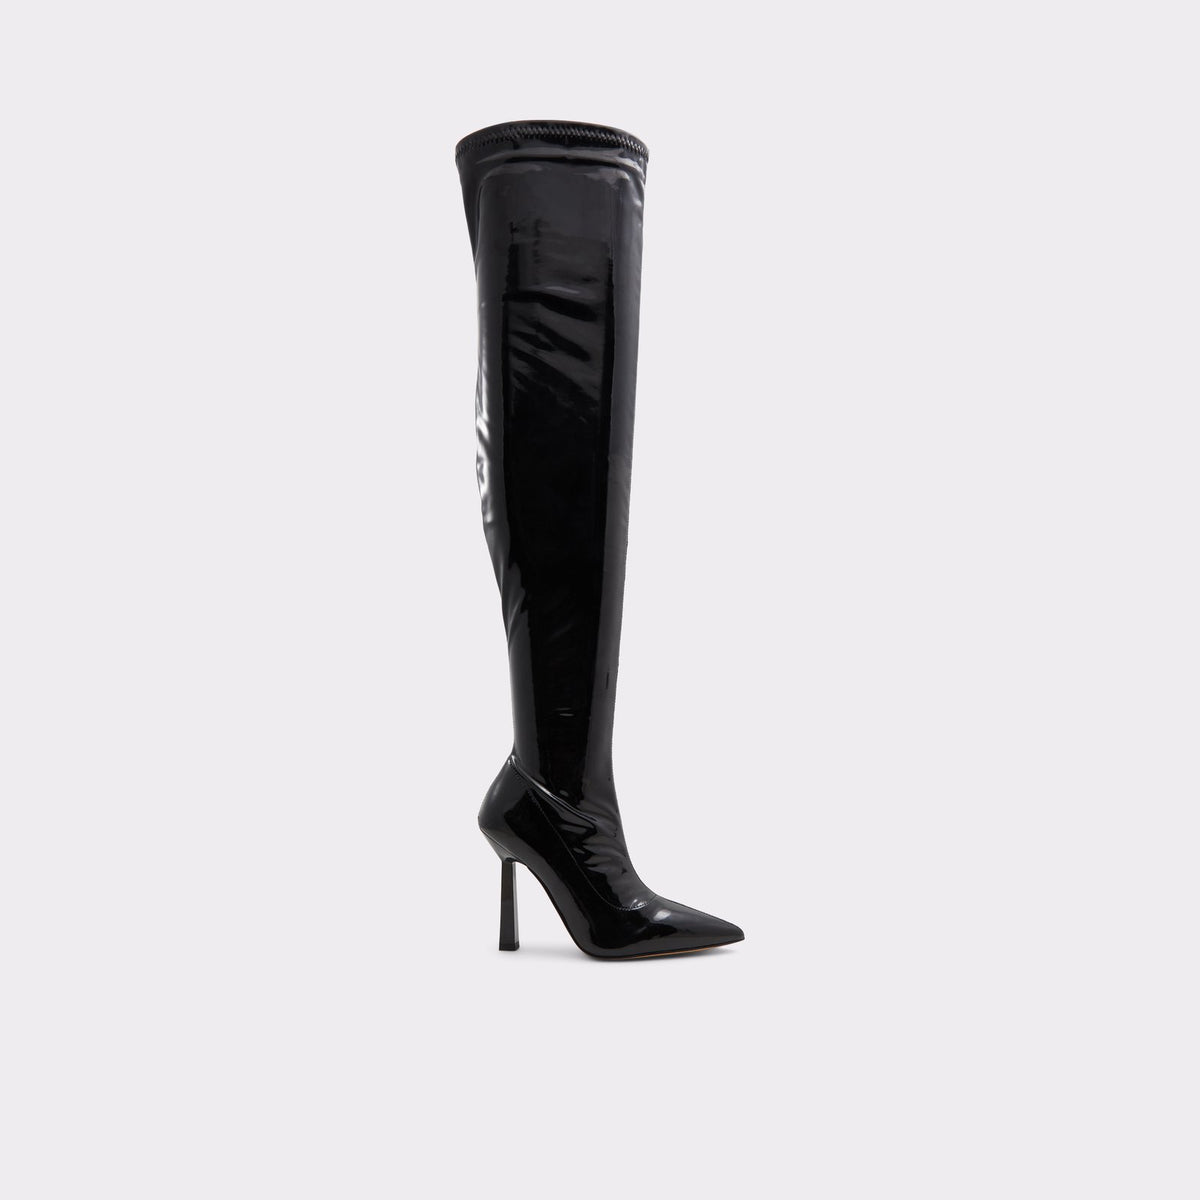 Fantasi Mange farlige situationer Lover og forskrifter Aldo Women's Over The Knee Boots Nella (Black) – ALDO Shoes UK